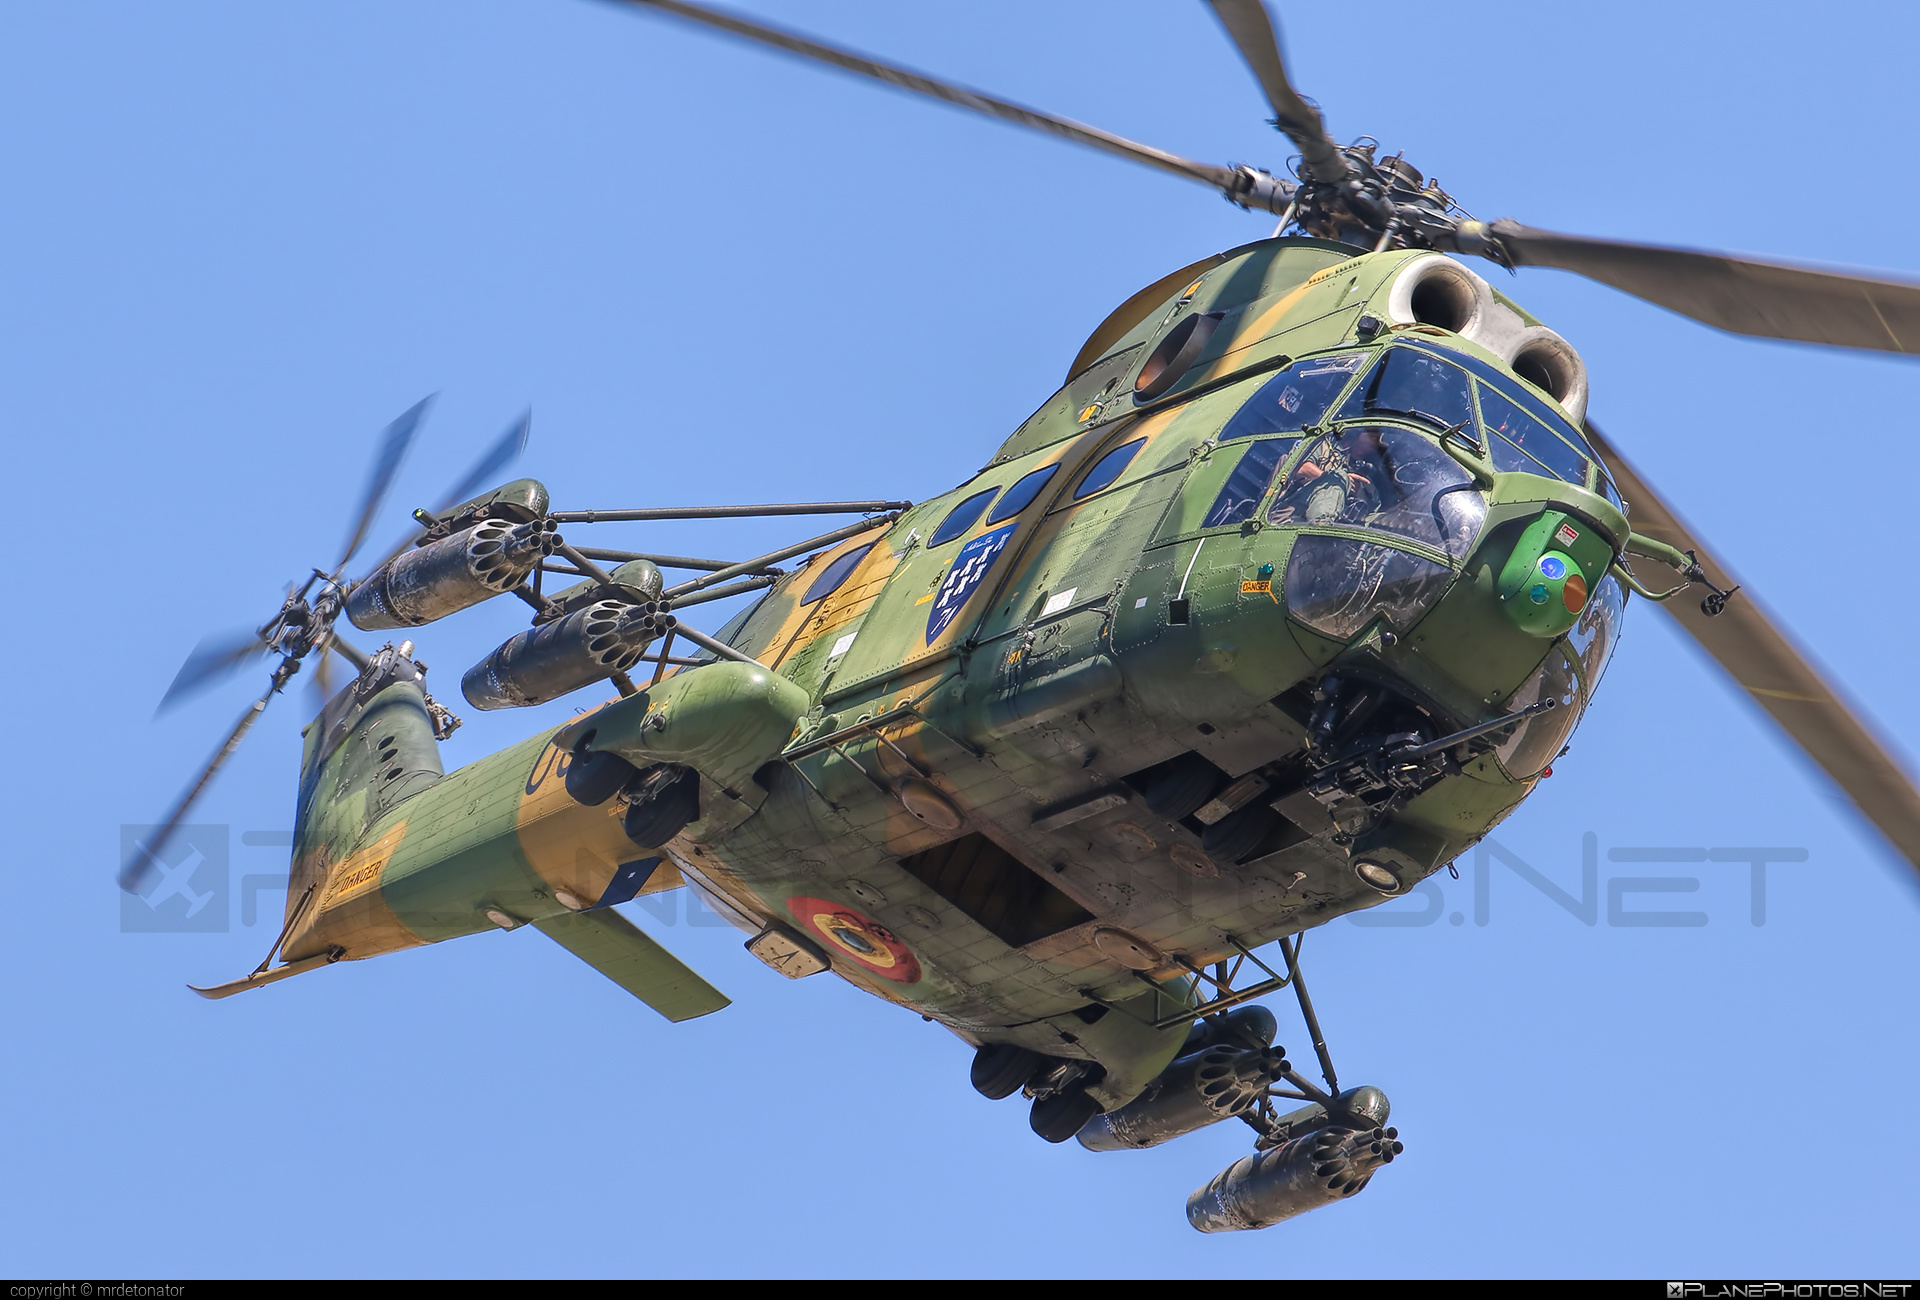 IAR 330L Puma SOCAT - 63 operated by Forţele Aeriene Române (Romanian Air Force) #forteleaerieneromane #iar #iar330 #iar330l #iar330lpuma #iar330lpumasocat #iar330puma #industriaAeronauticaRomana #romanianairforce